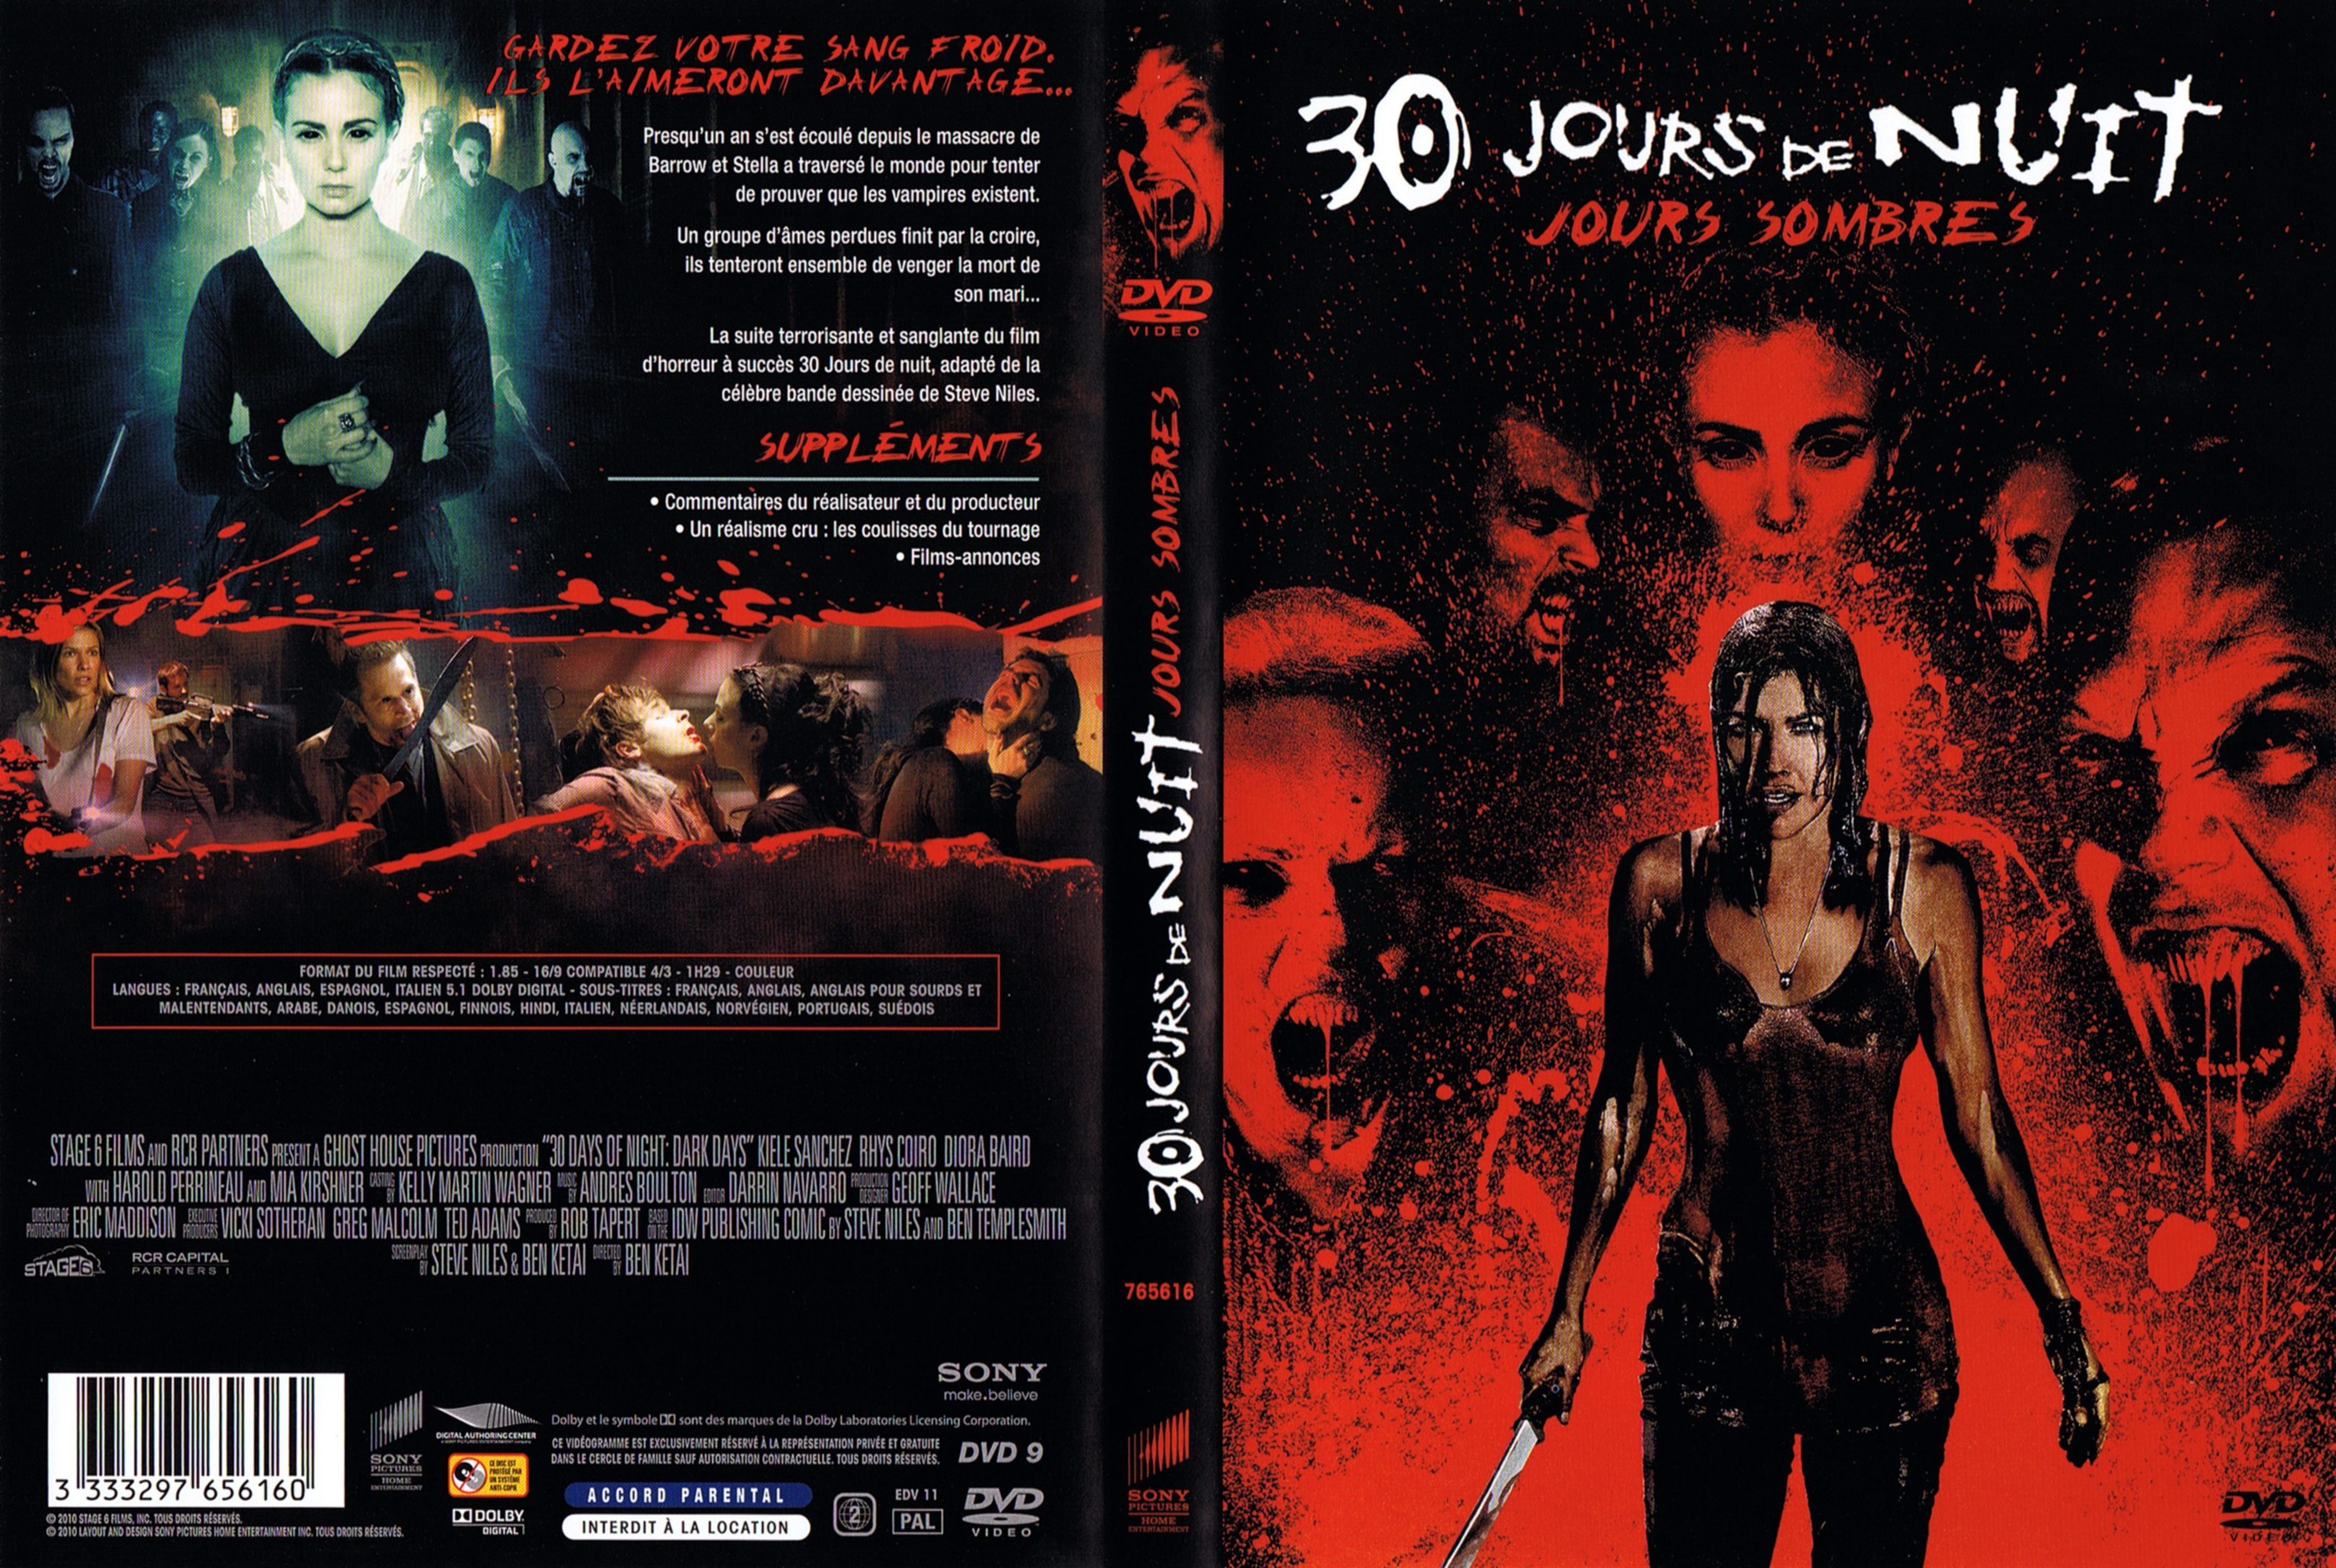 Jaquette DVD 30 jours de nuits 2 - jours sombres